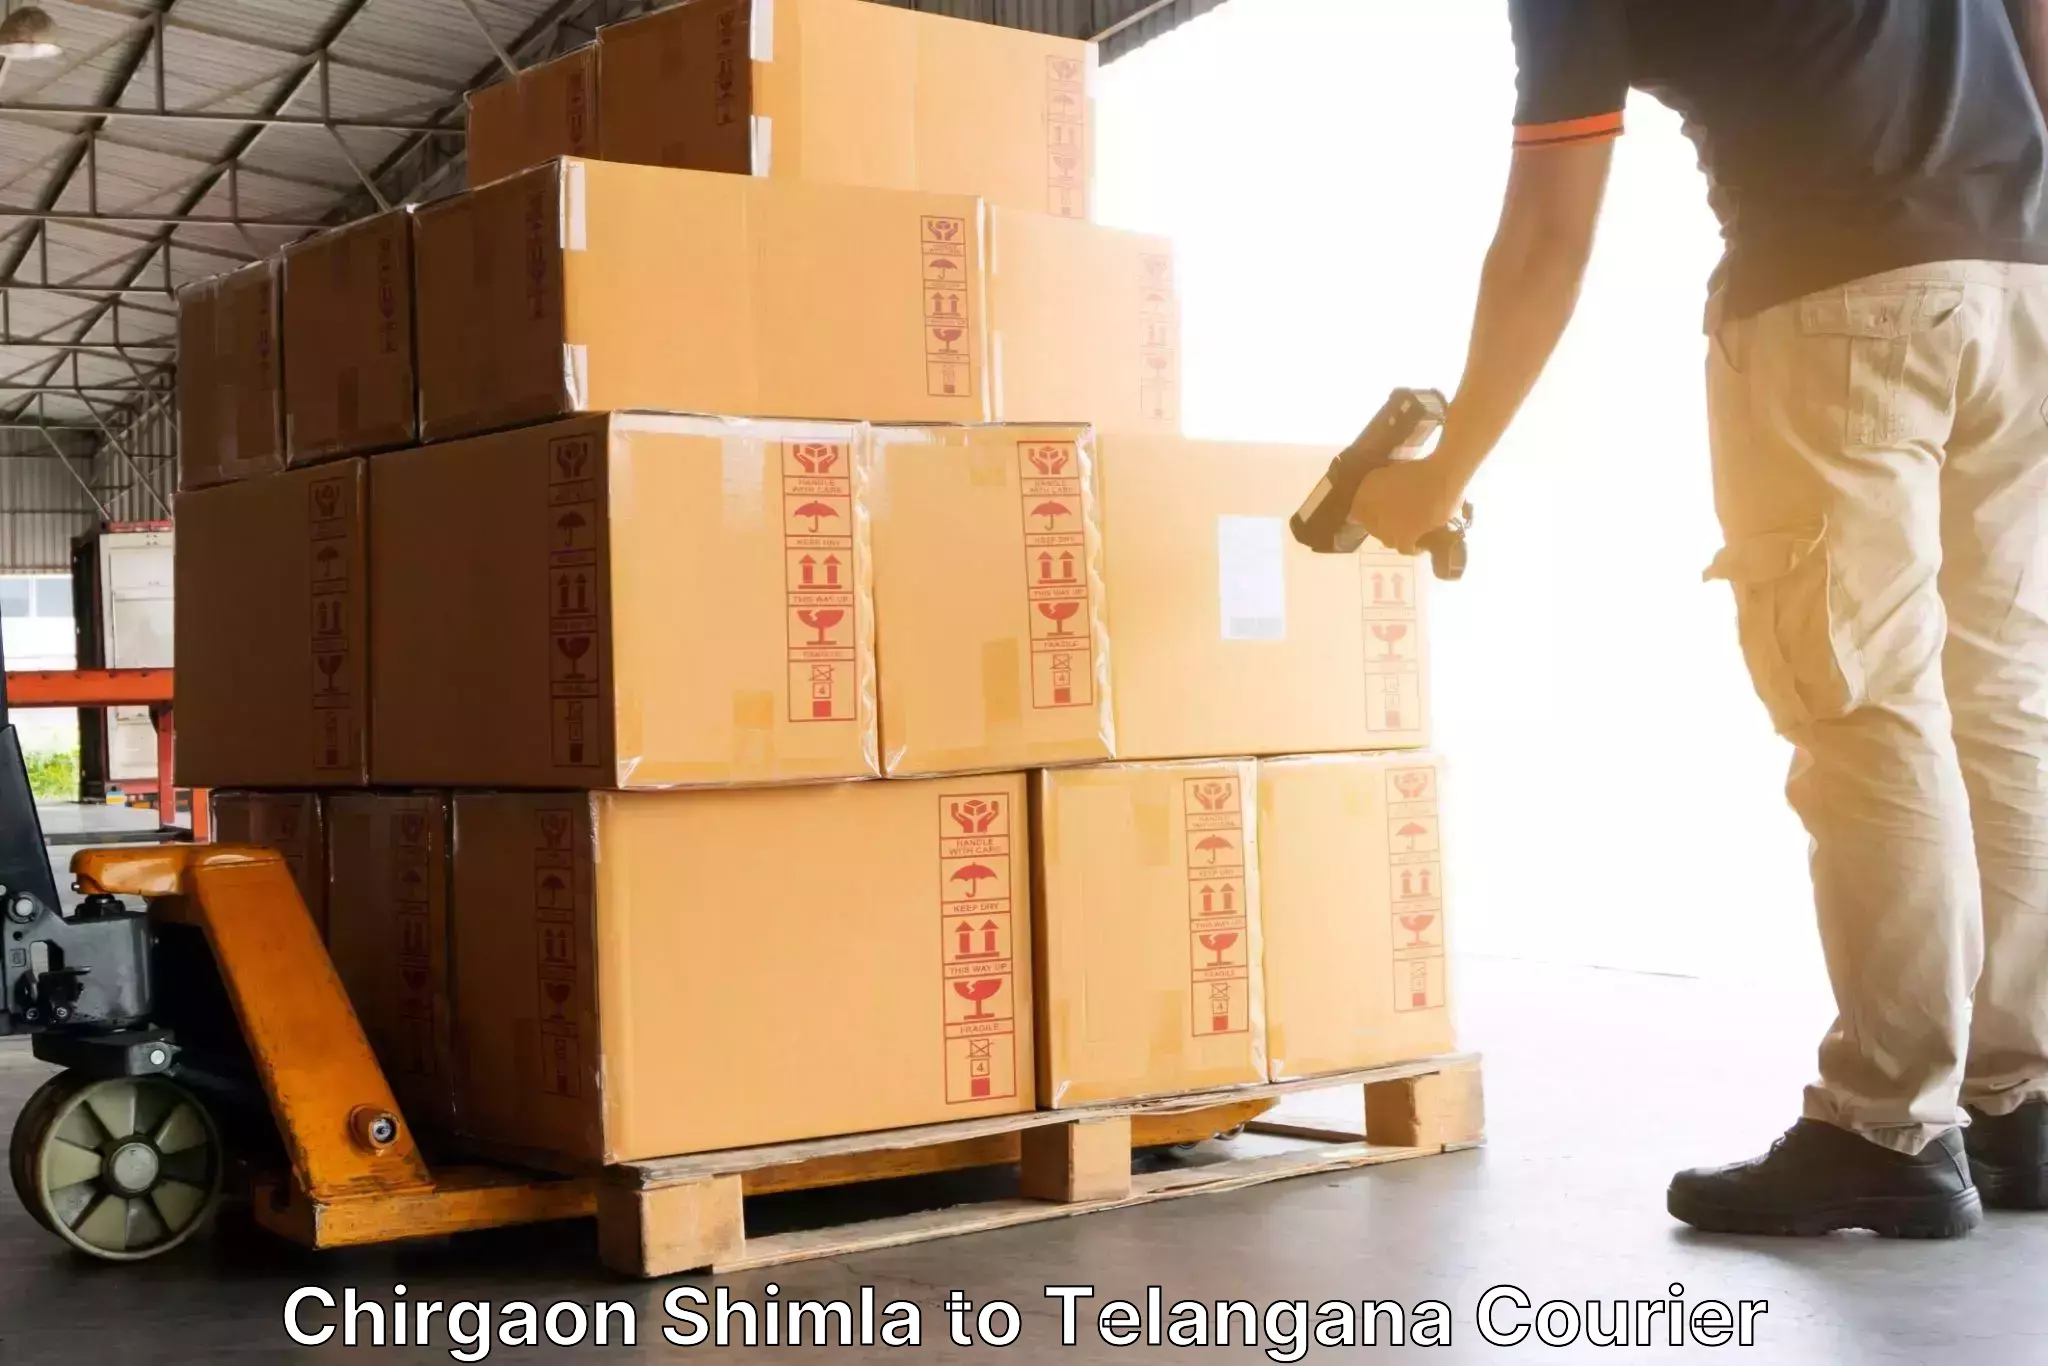 High-capacity parcel service Chirgaon Shimla to Telangana